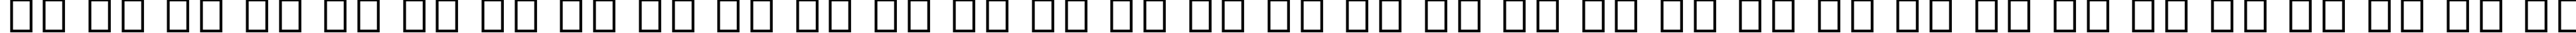 Пример написания русского алфавита шрифтом DokChampa